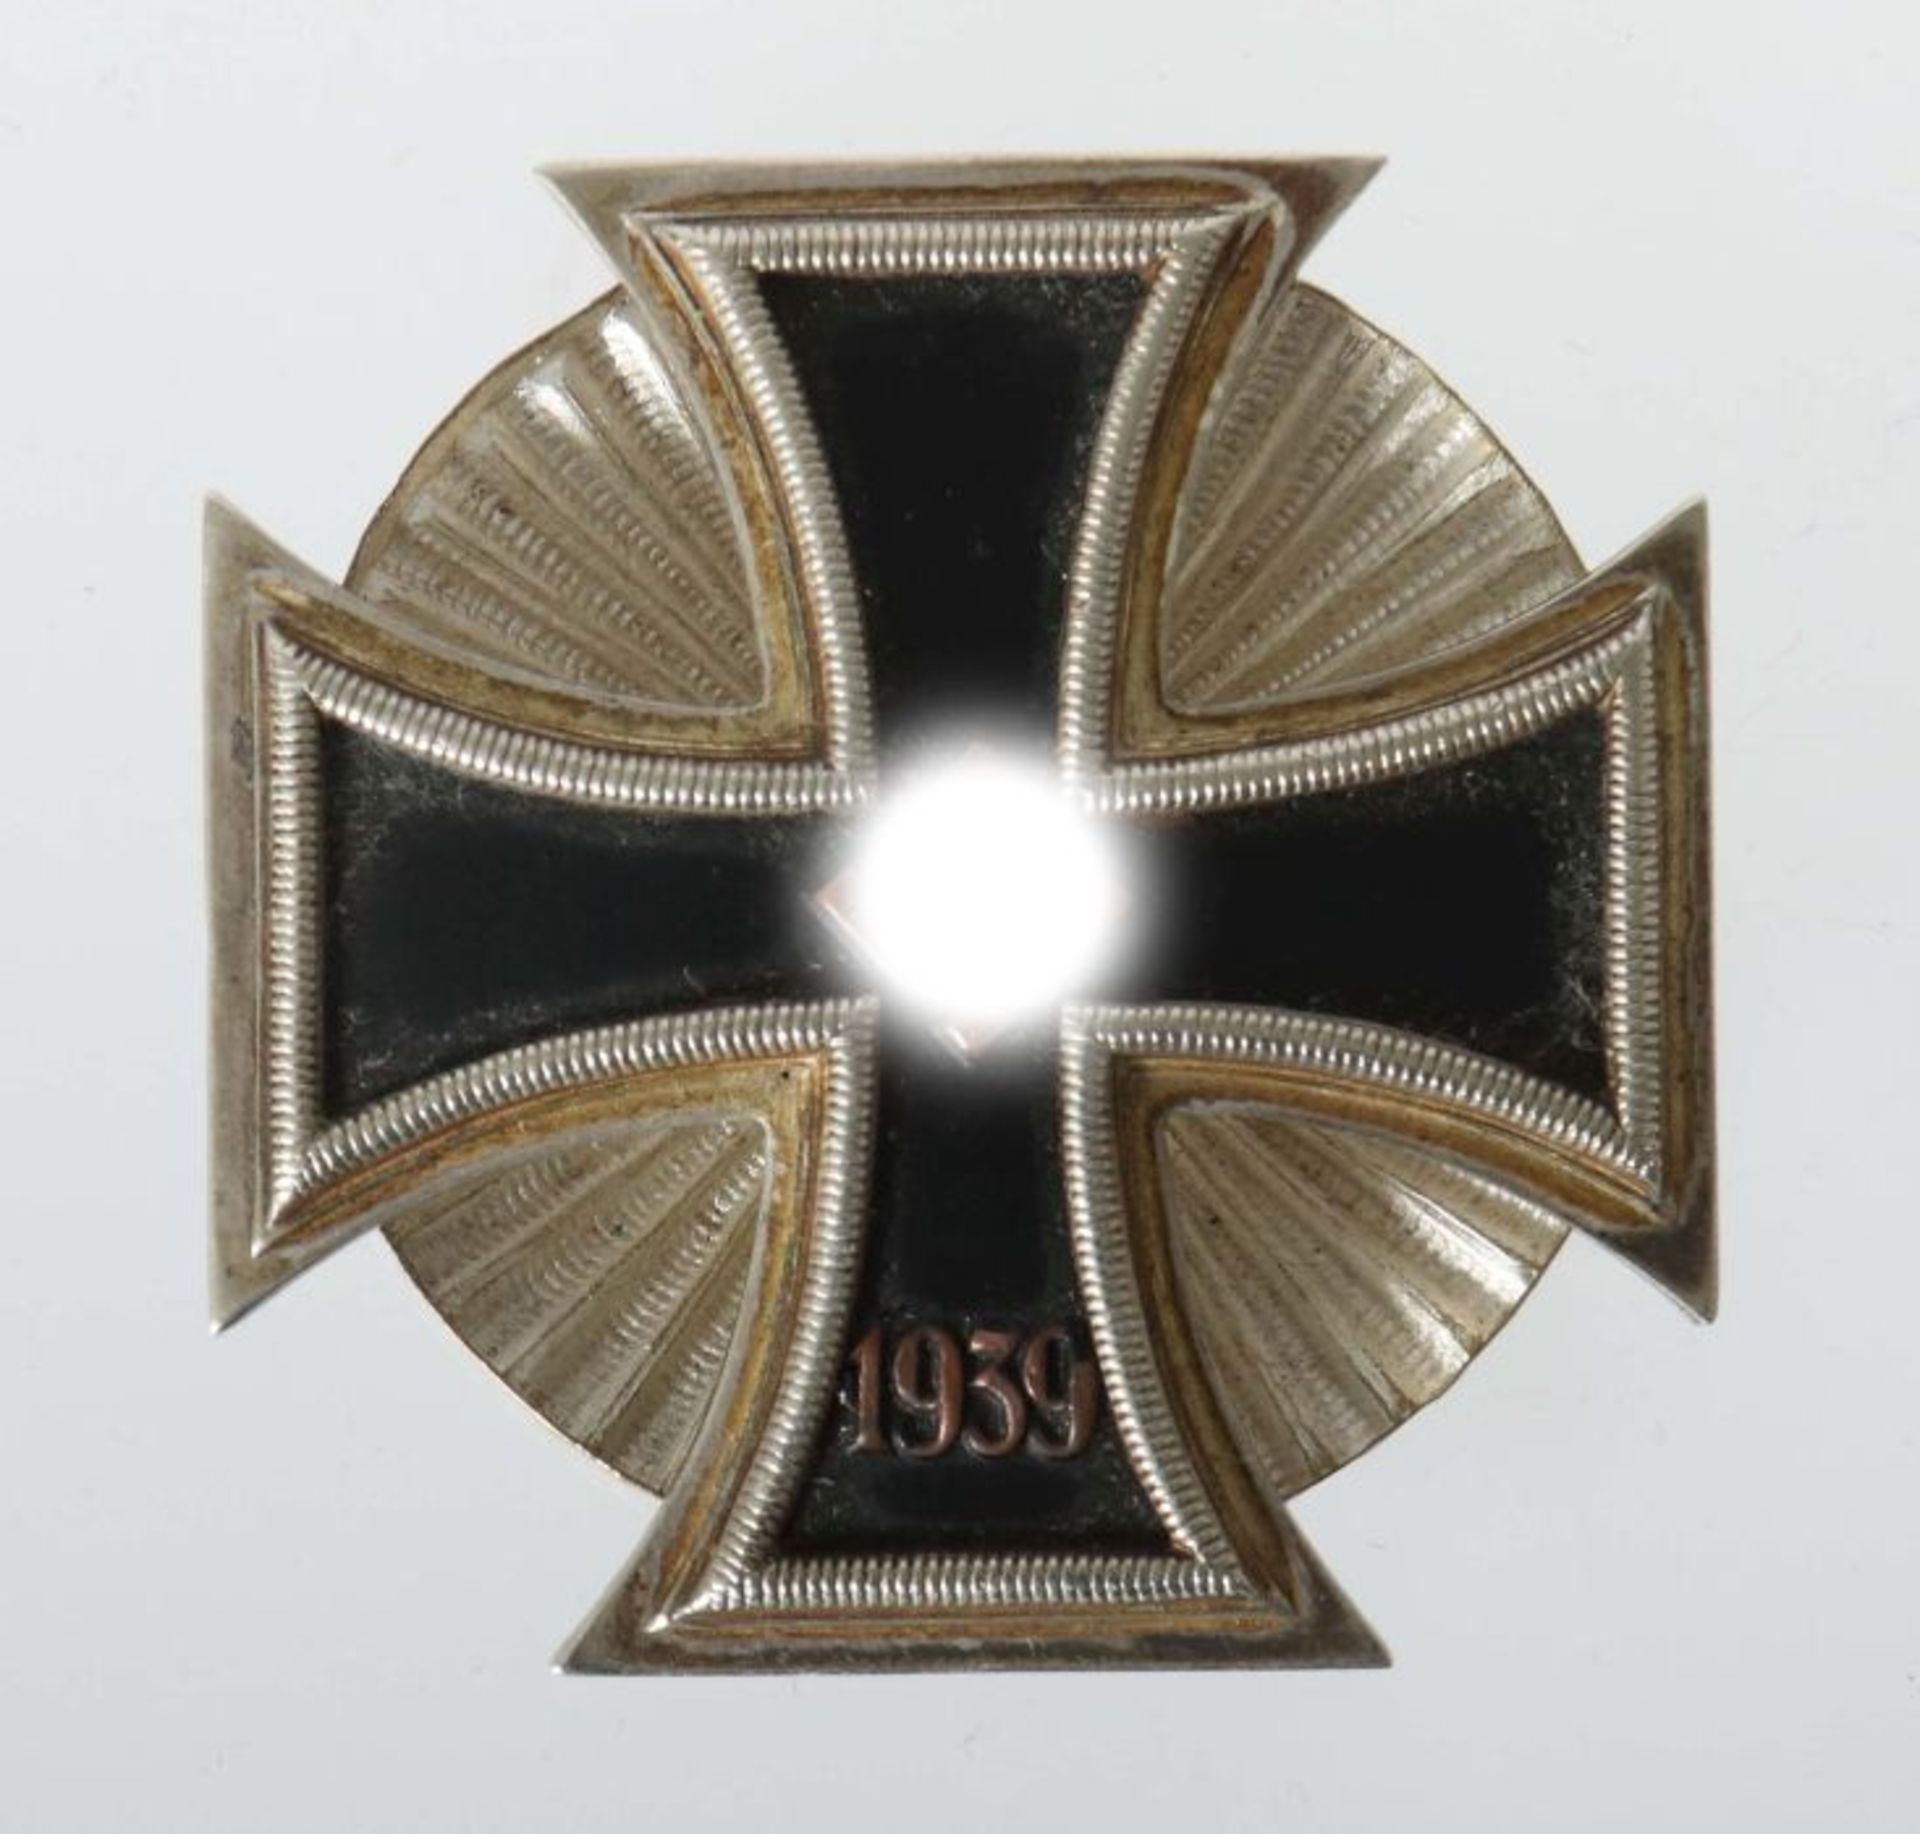 Eisernes Kreuz 1939, 1. Klasse, Schinkel Form an Stern-Scheibe, leicht gewölbte Form, geschwärzter